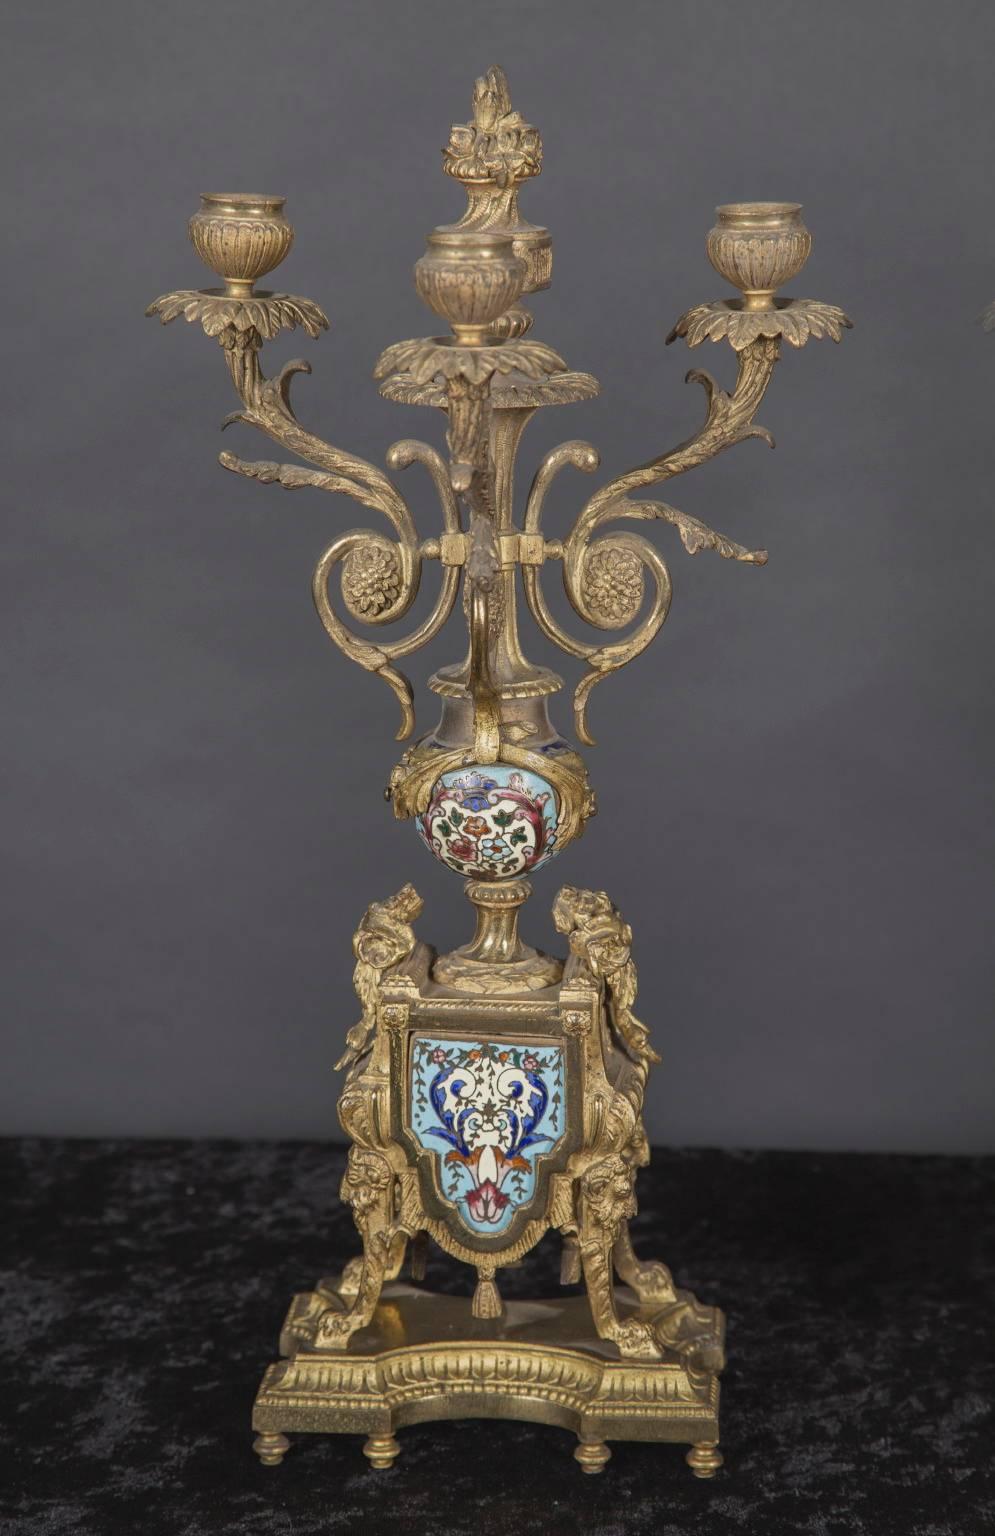 Cette paire inhabituelle de candélabres à trois branches du XIXe siècle est en bronze et présente des inserts en champleve. La paire d'antiquités françaises est à dos plat, conçue pour être utilisée contre le mur, comme sur une cheminée, et comporte